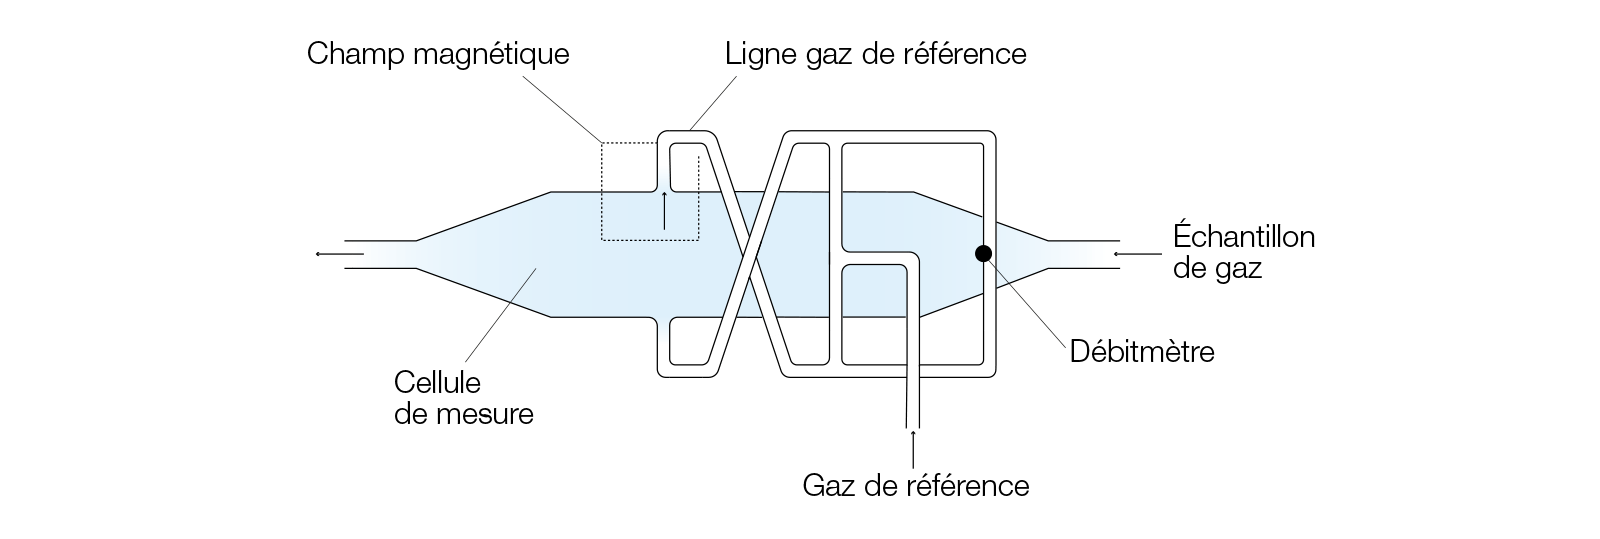 analyseur-d-oxygene-paramagnetique-a-micro-debitmetre-massique-schema-fr